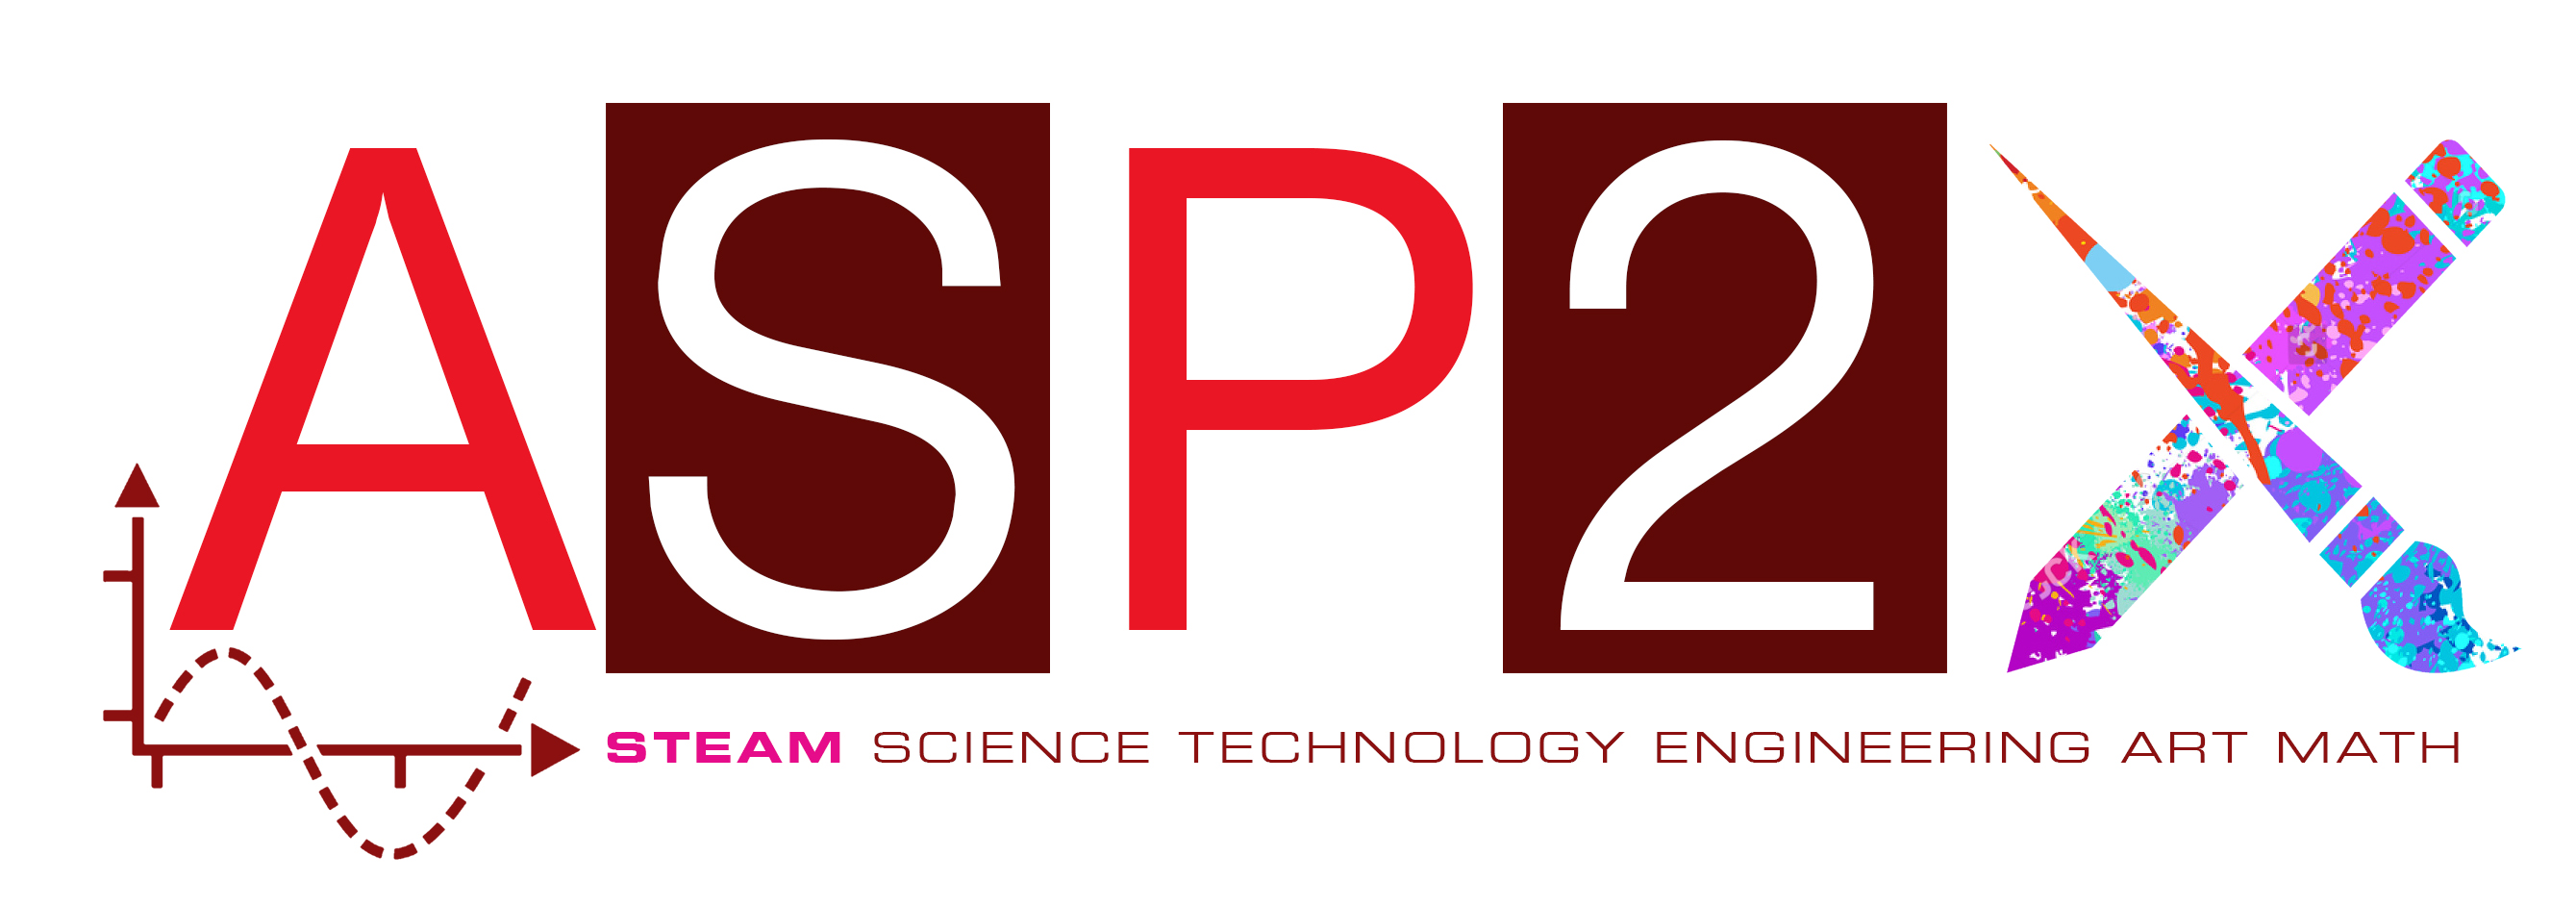 ASP2 STEAM Academy Inc. Logo